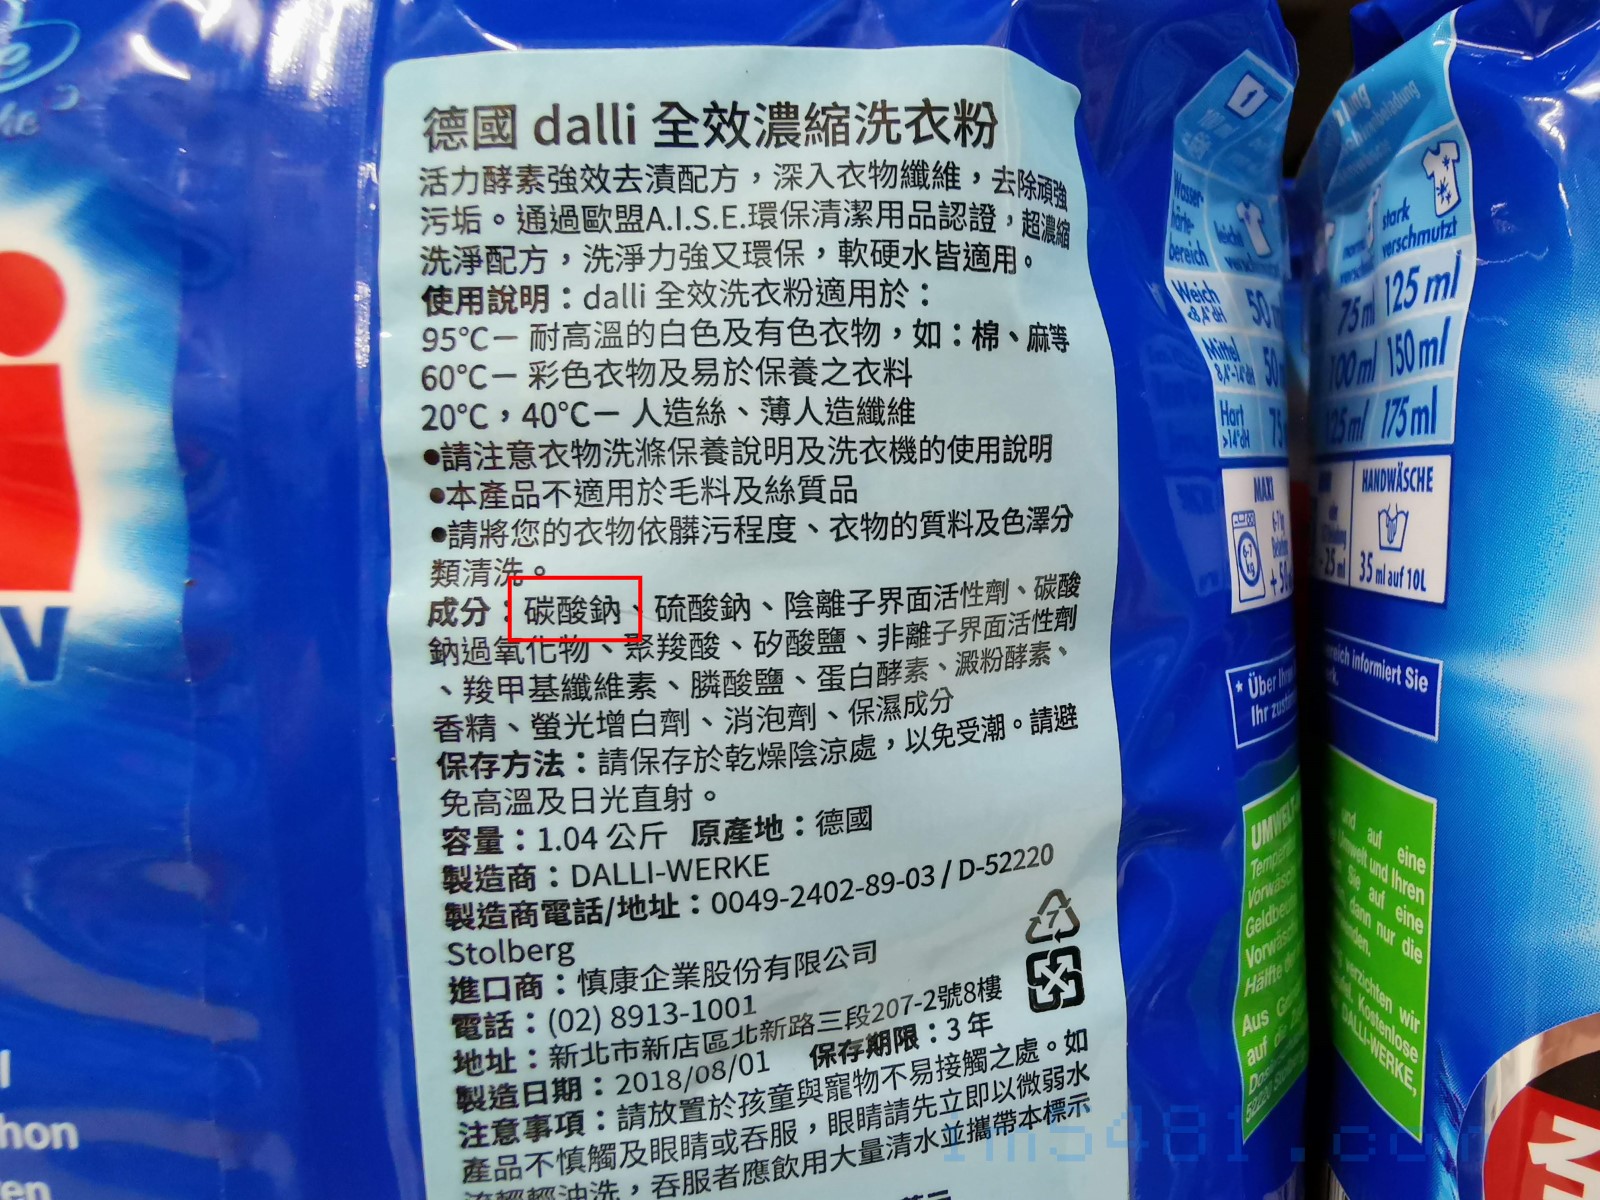 德國dalli全校濃縮洗衣粉添加的助洗劑是碳酸鈉